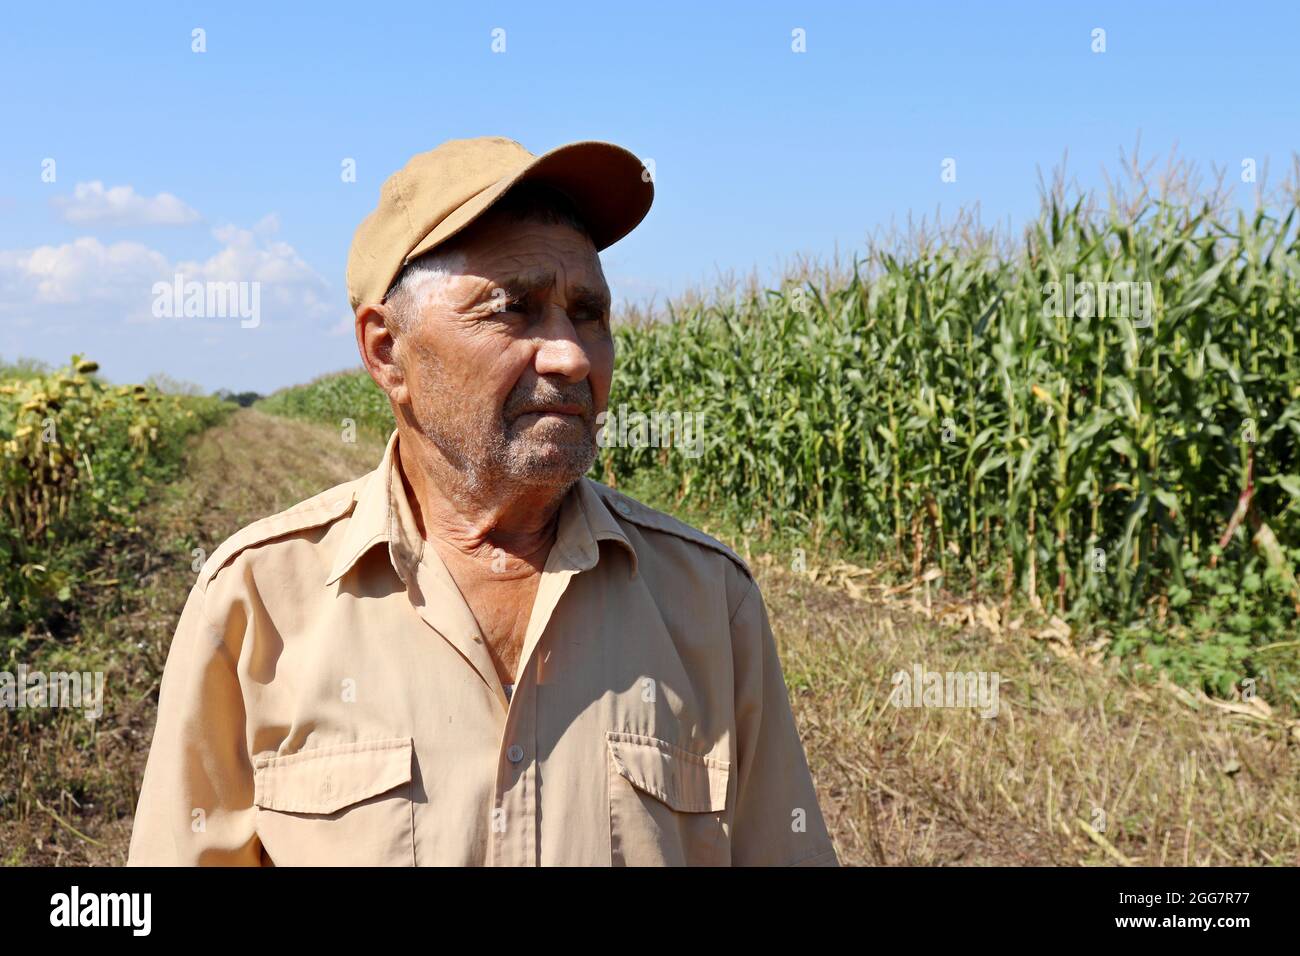 Der alte Bauer steht auf einem grünen Maisfeld, ein älterer Mann mit Baseballmütze inspiziert die Ernte. Arbeit auf dem Bauernhof an einem sonnigen Tag, hohe Maisstängel, gute Ernte Stockfoto